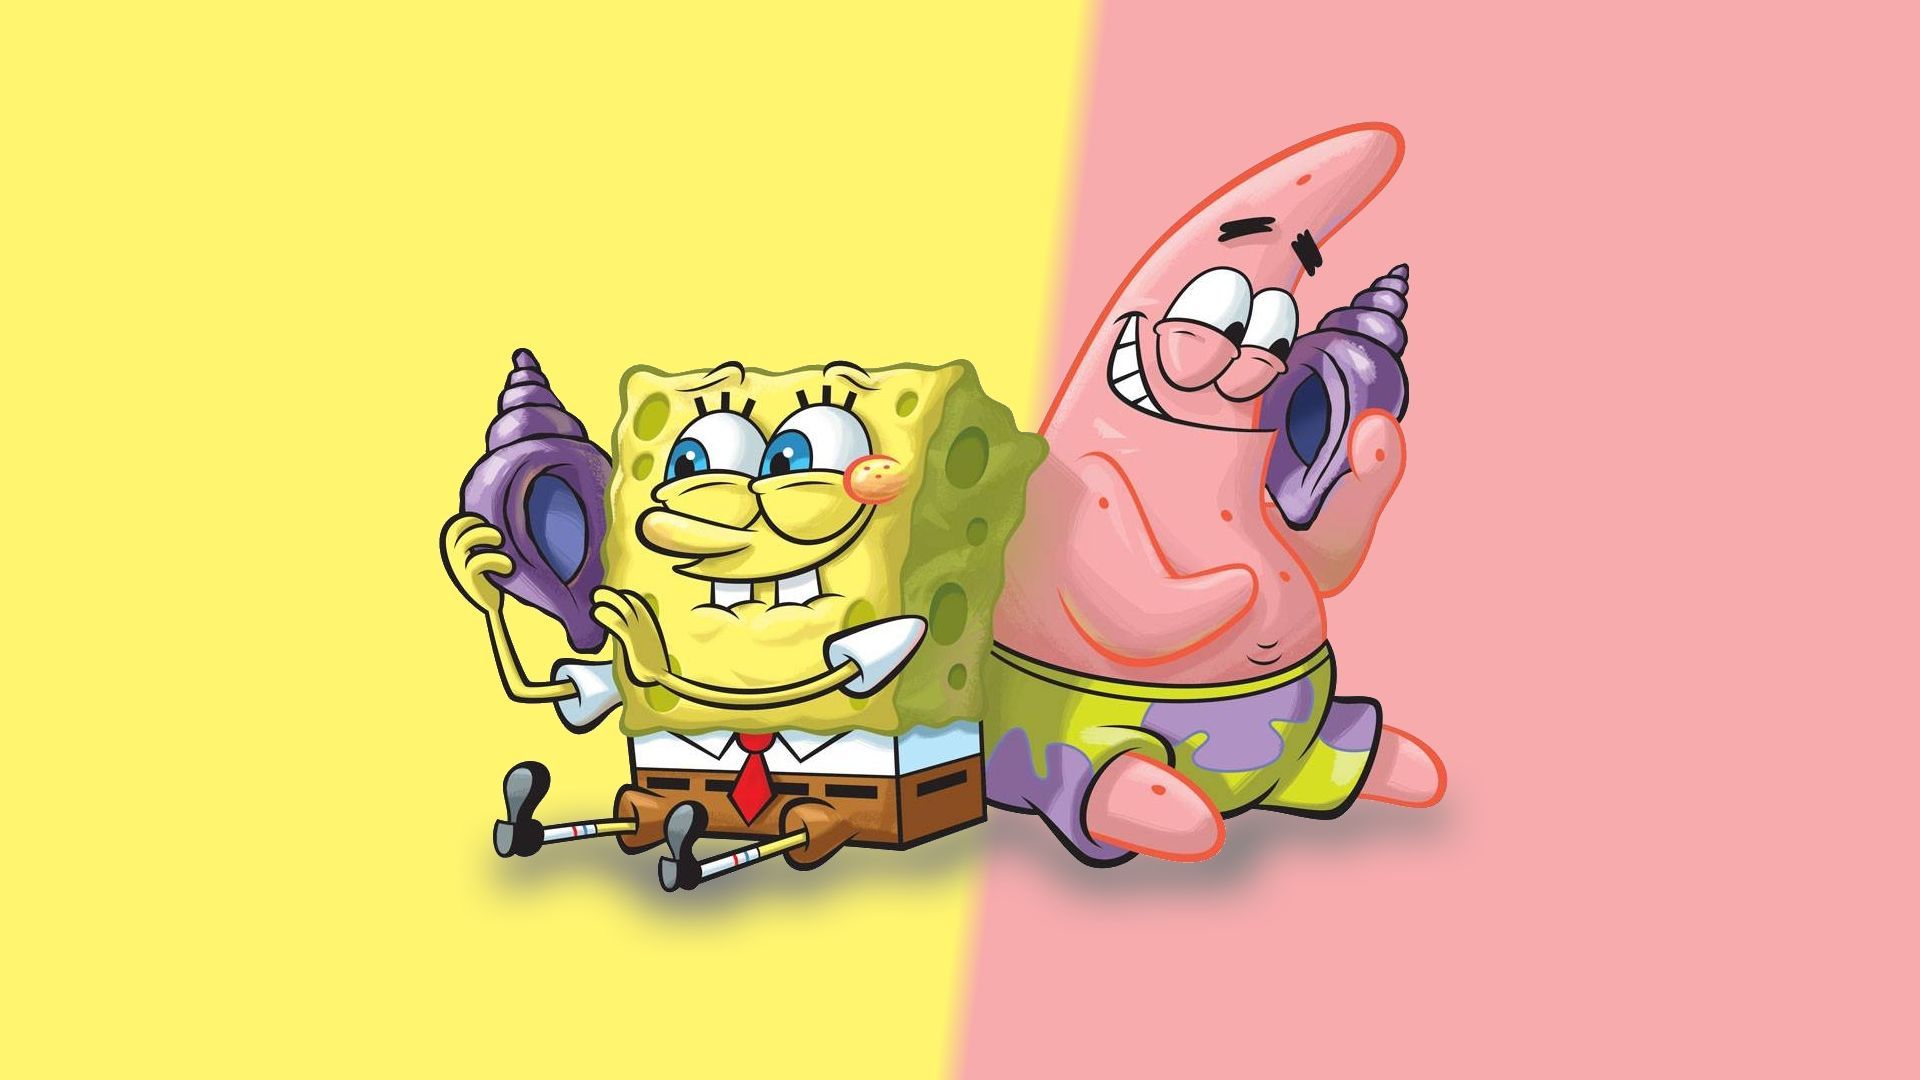 Spongebob And Patrick Wallpapers 4k Hd Spongebob And Patrick Backgrounds On Wallpaperbat